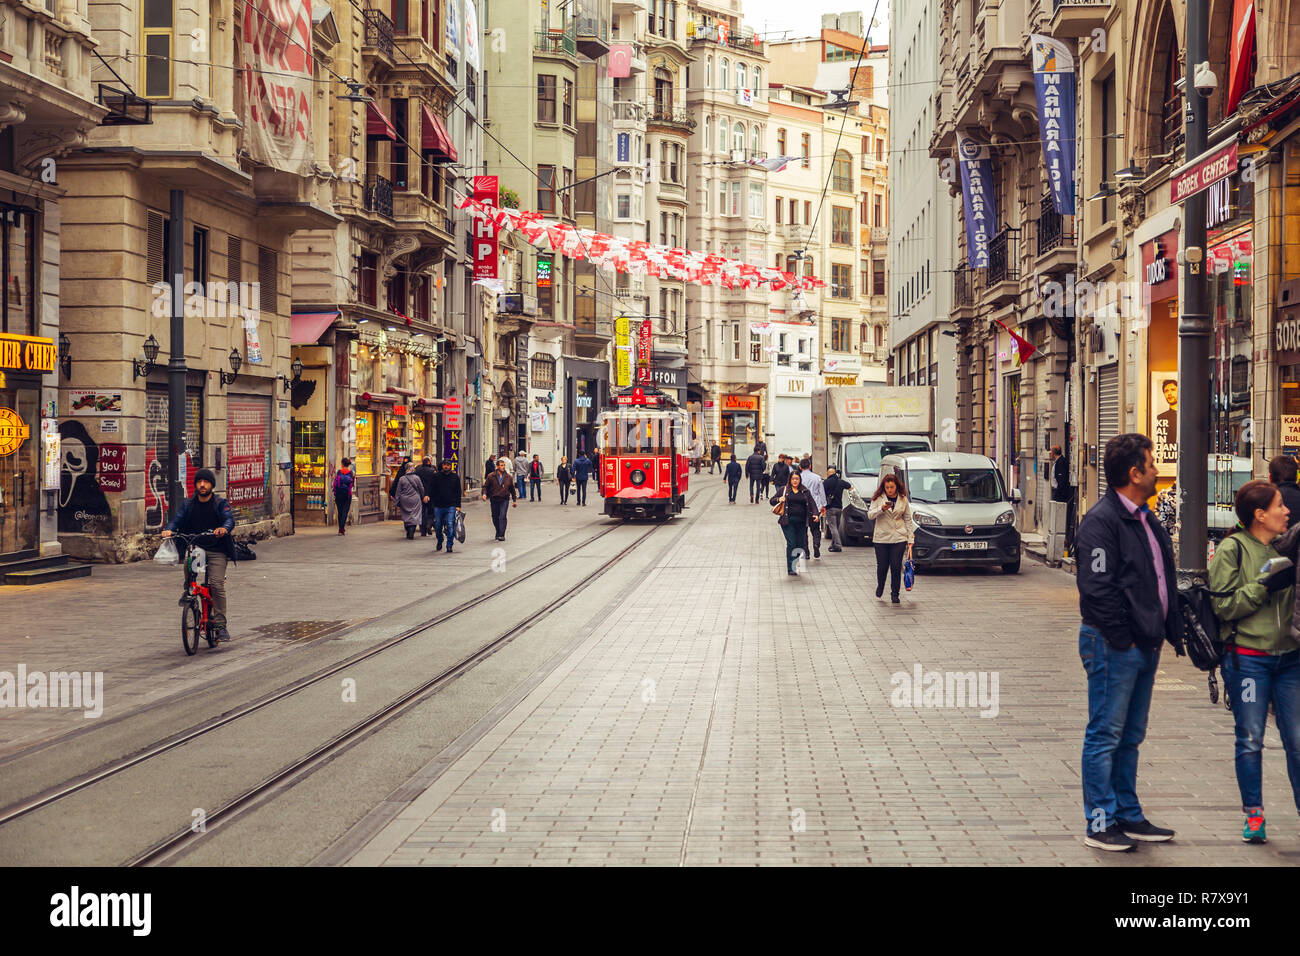 Nostalgische rot Retro Straßenbahn auf berühmten Istiklal Street. ISTANBUL, Türkei - 13 November 2018. Stockfoto